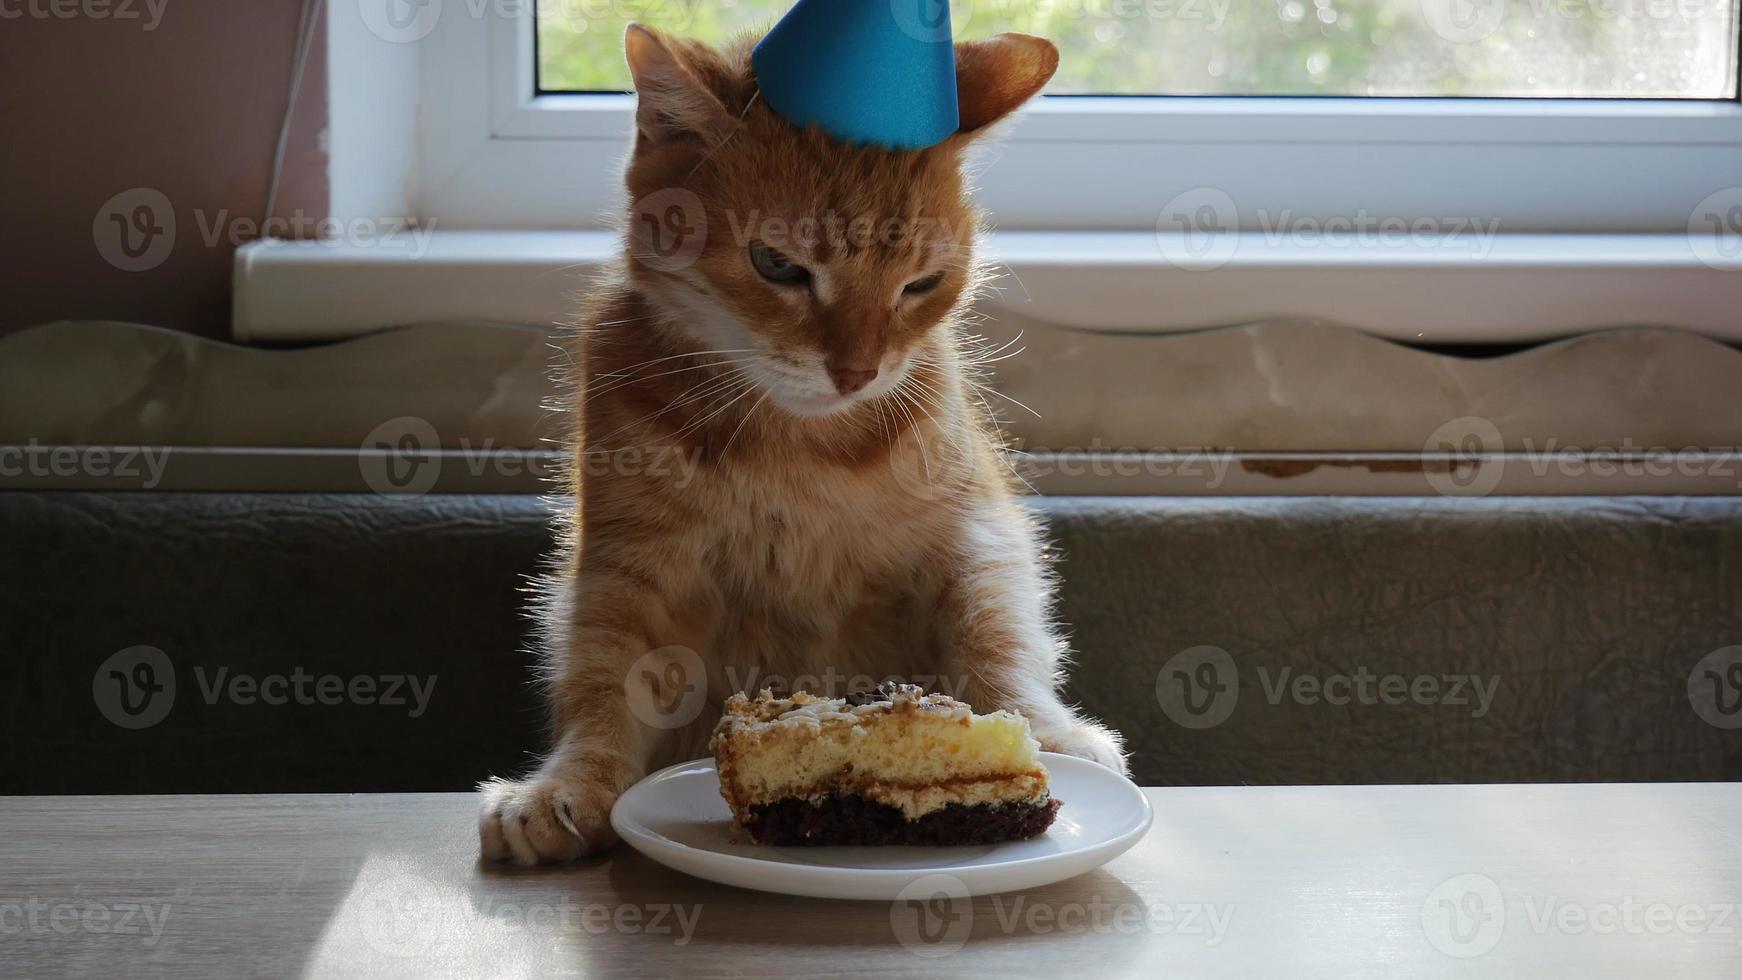 Zenzero gatto mangiare compleanno torta. compleanno gatto. berretto su il testa. anniversario o vacanza gatto. 4k foto